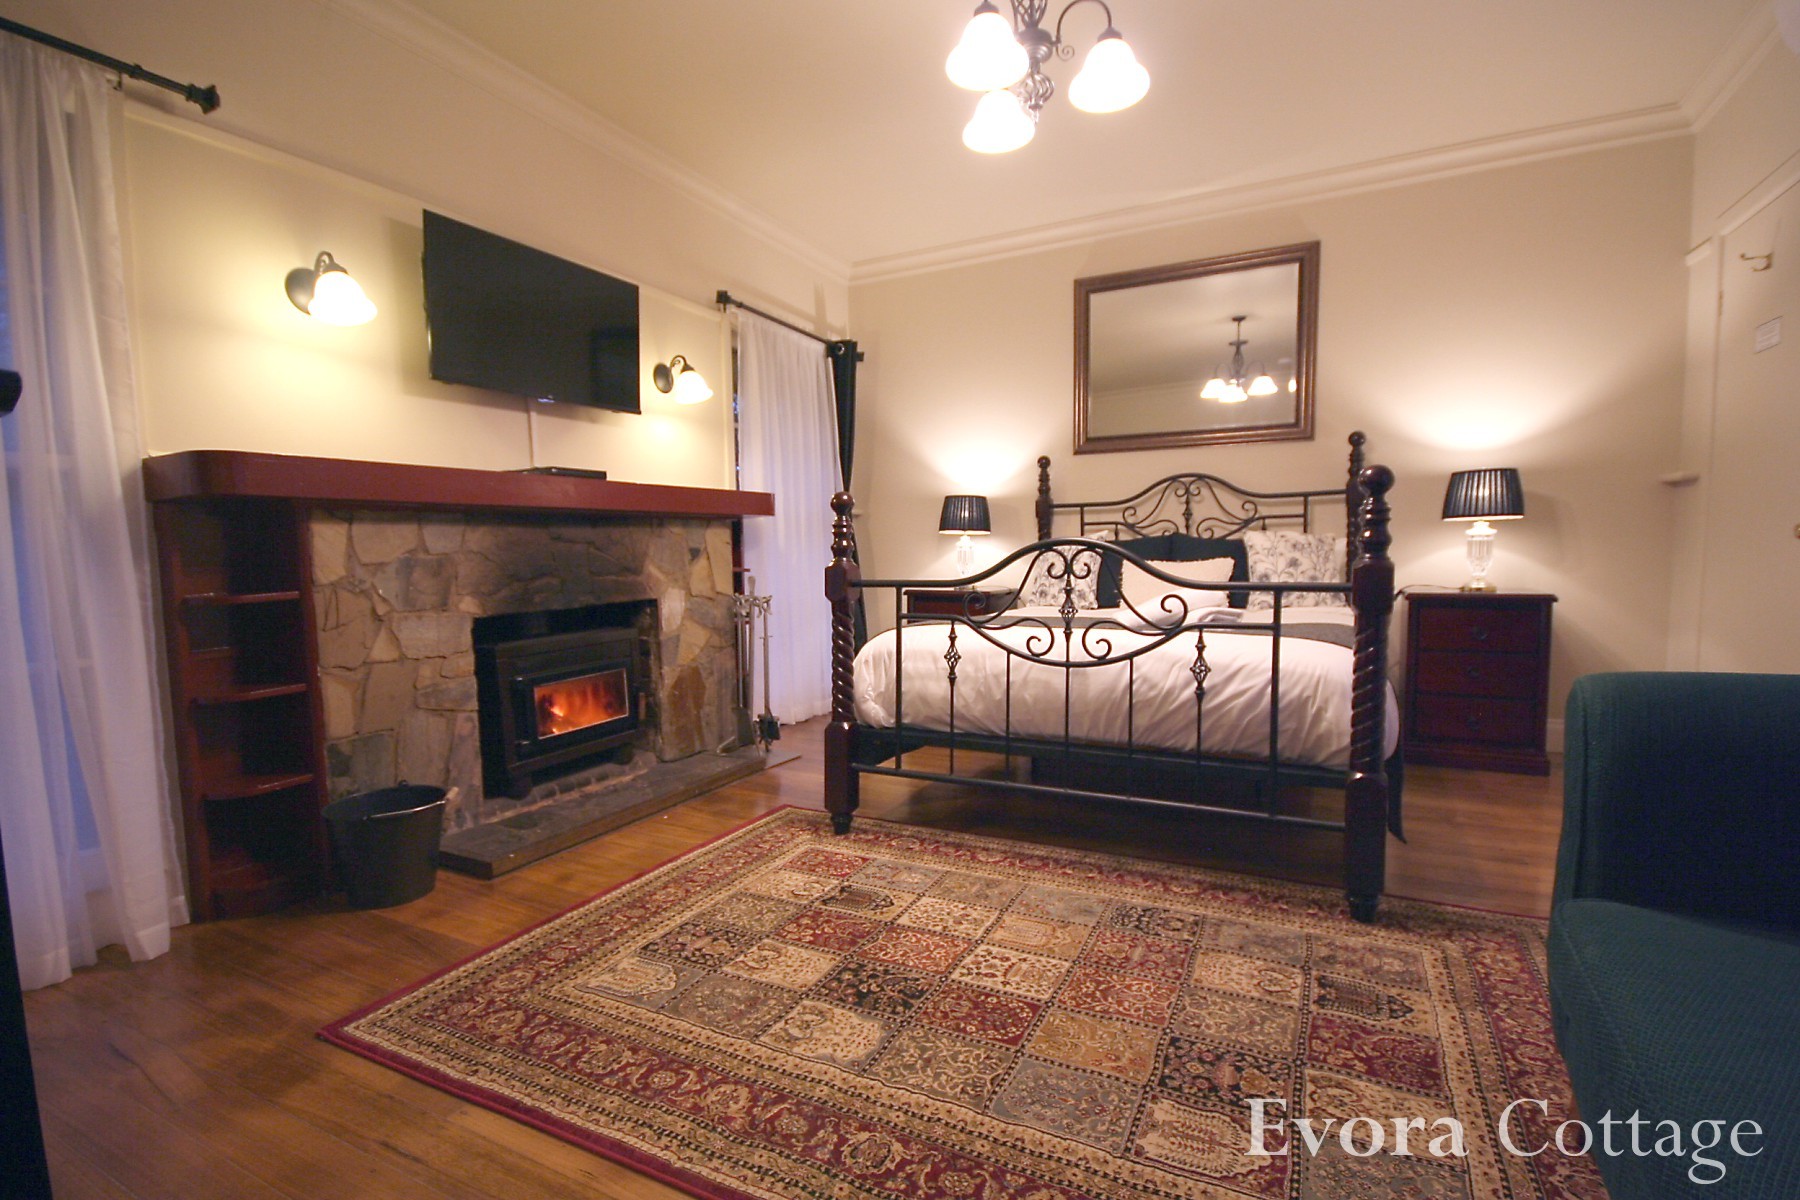 Evora Cottage - Bedroom